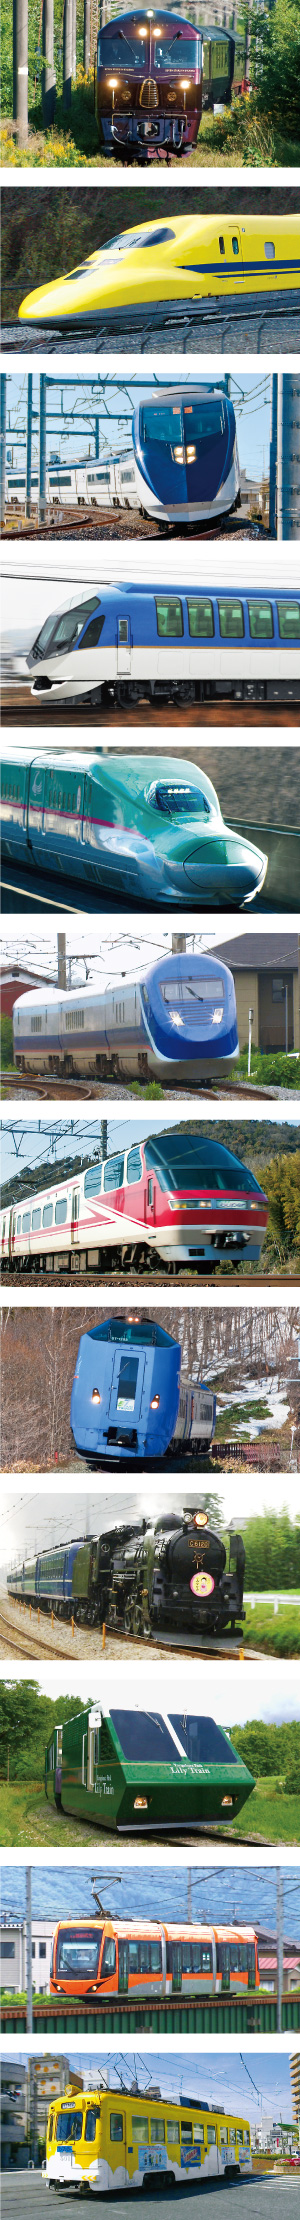 daikoushin_web_train.jpg